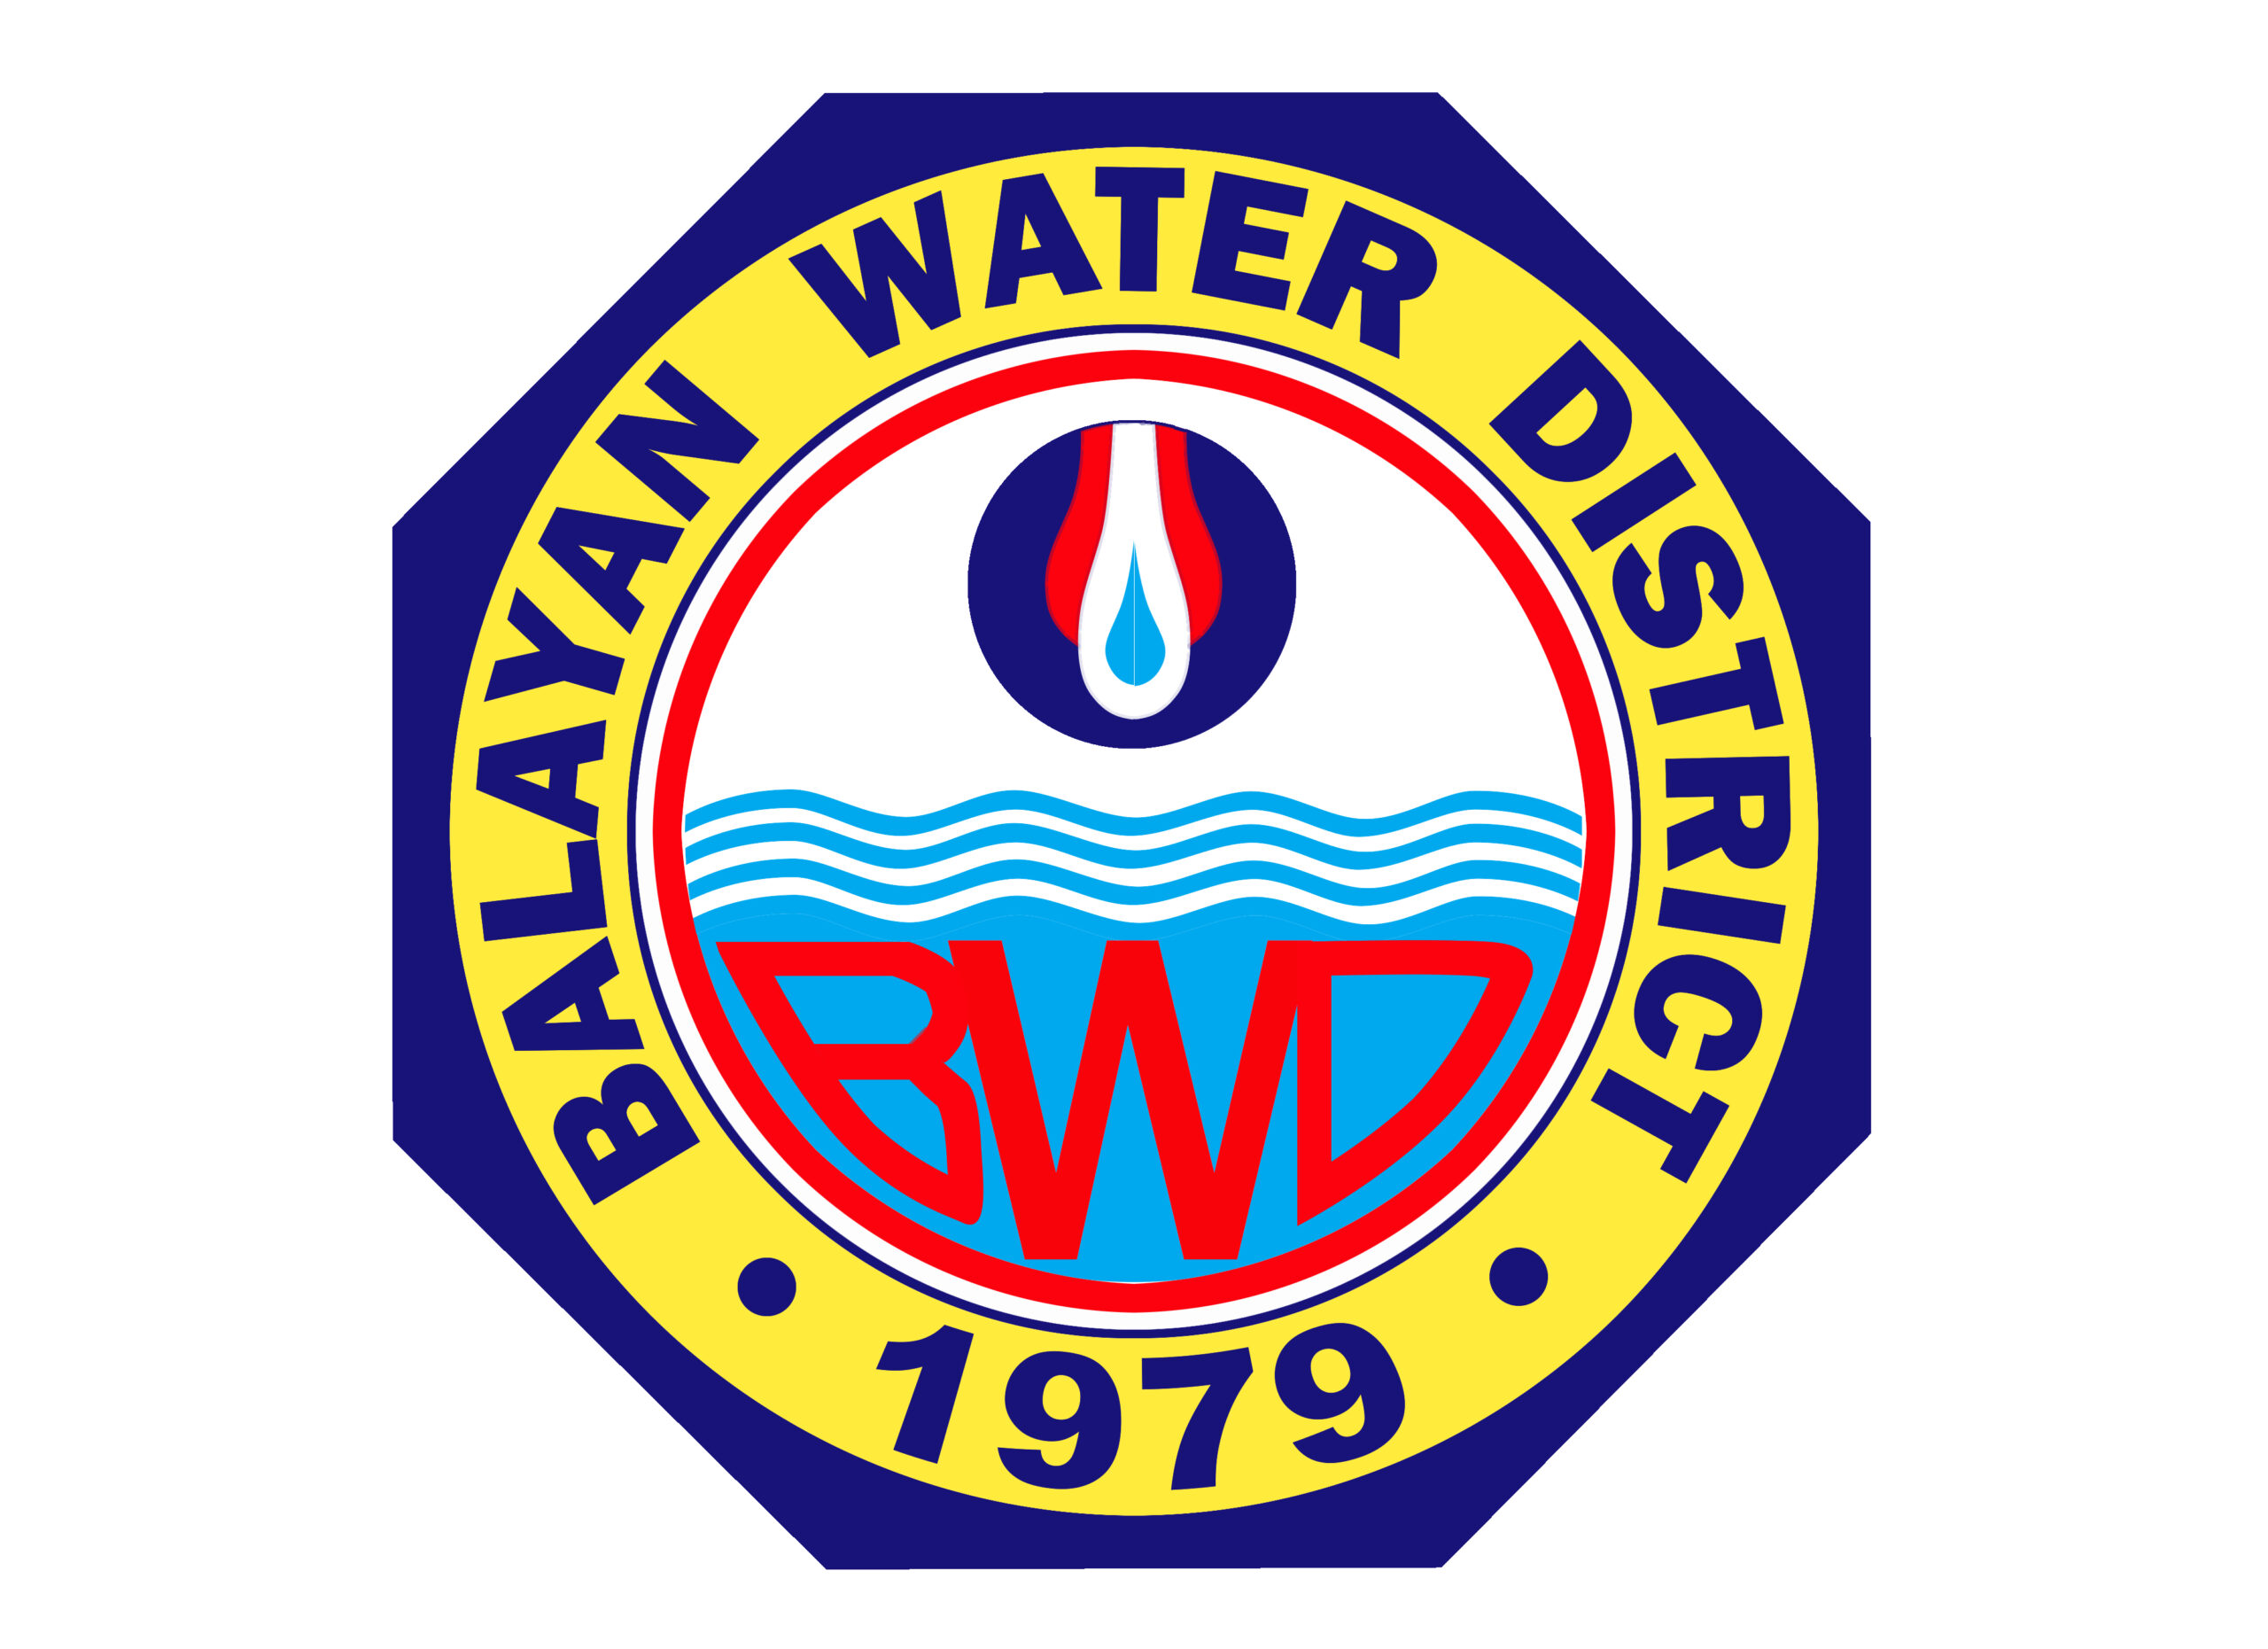 BALAYAN WATER DISTRICT